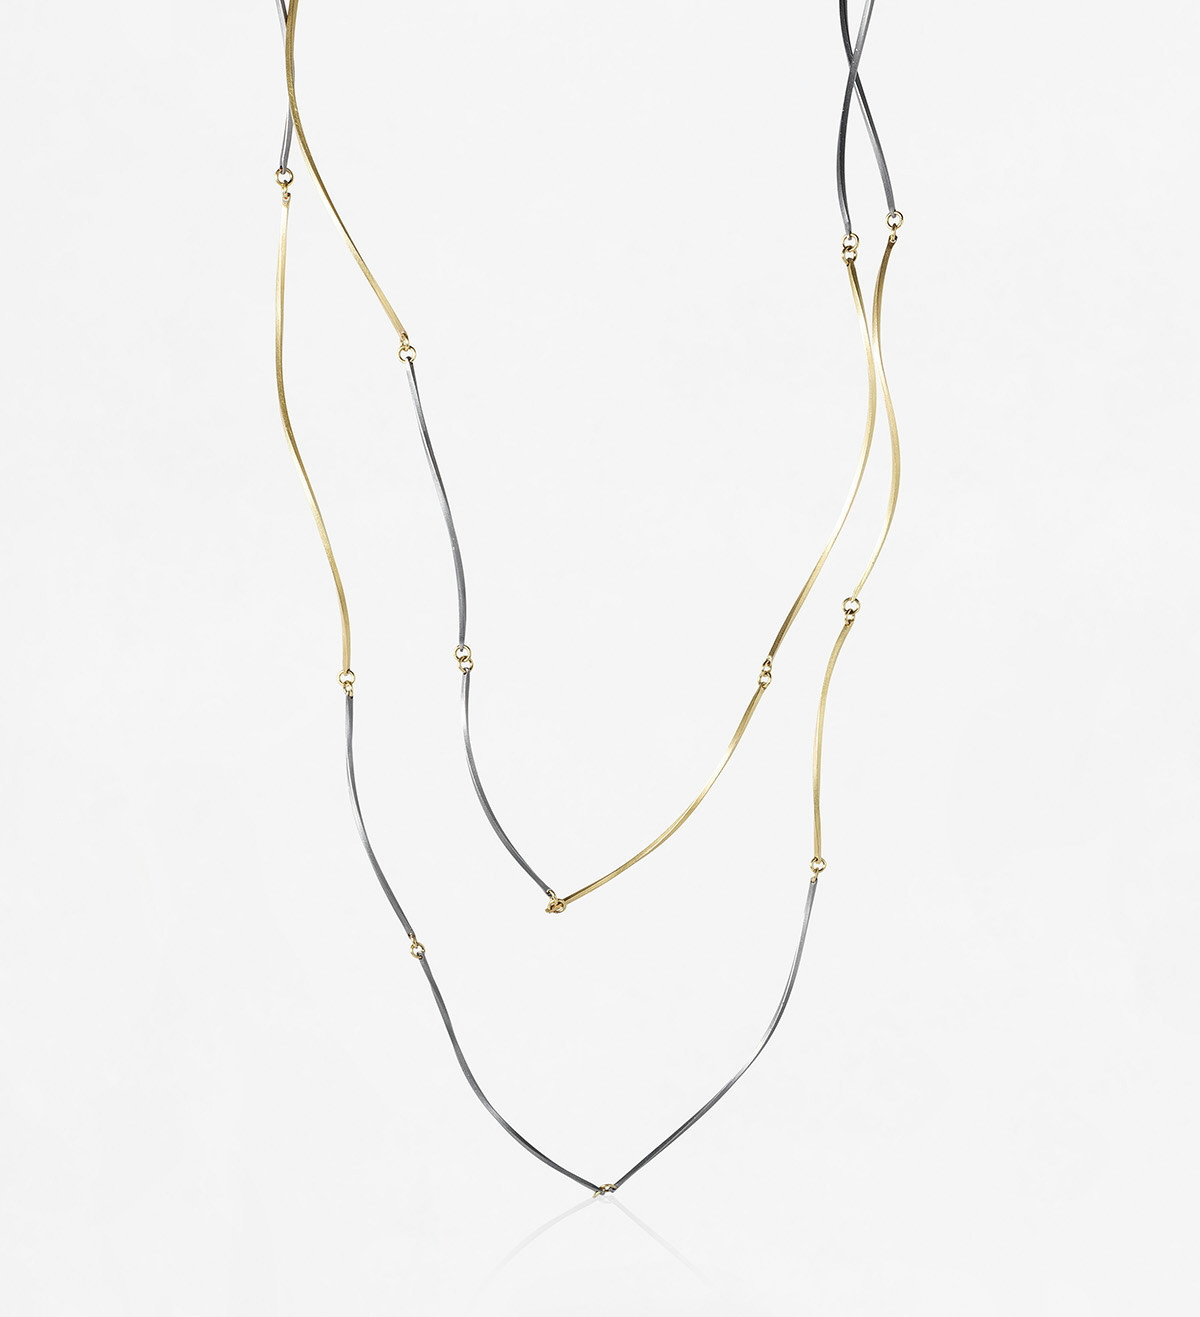 18k gold and titanium necklace Pinassa 126cm